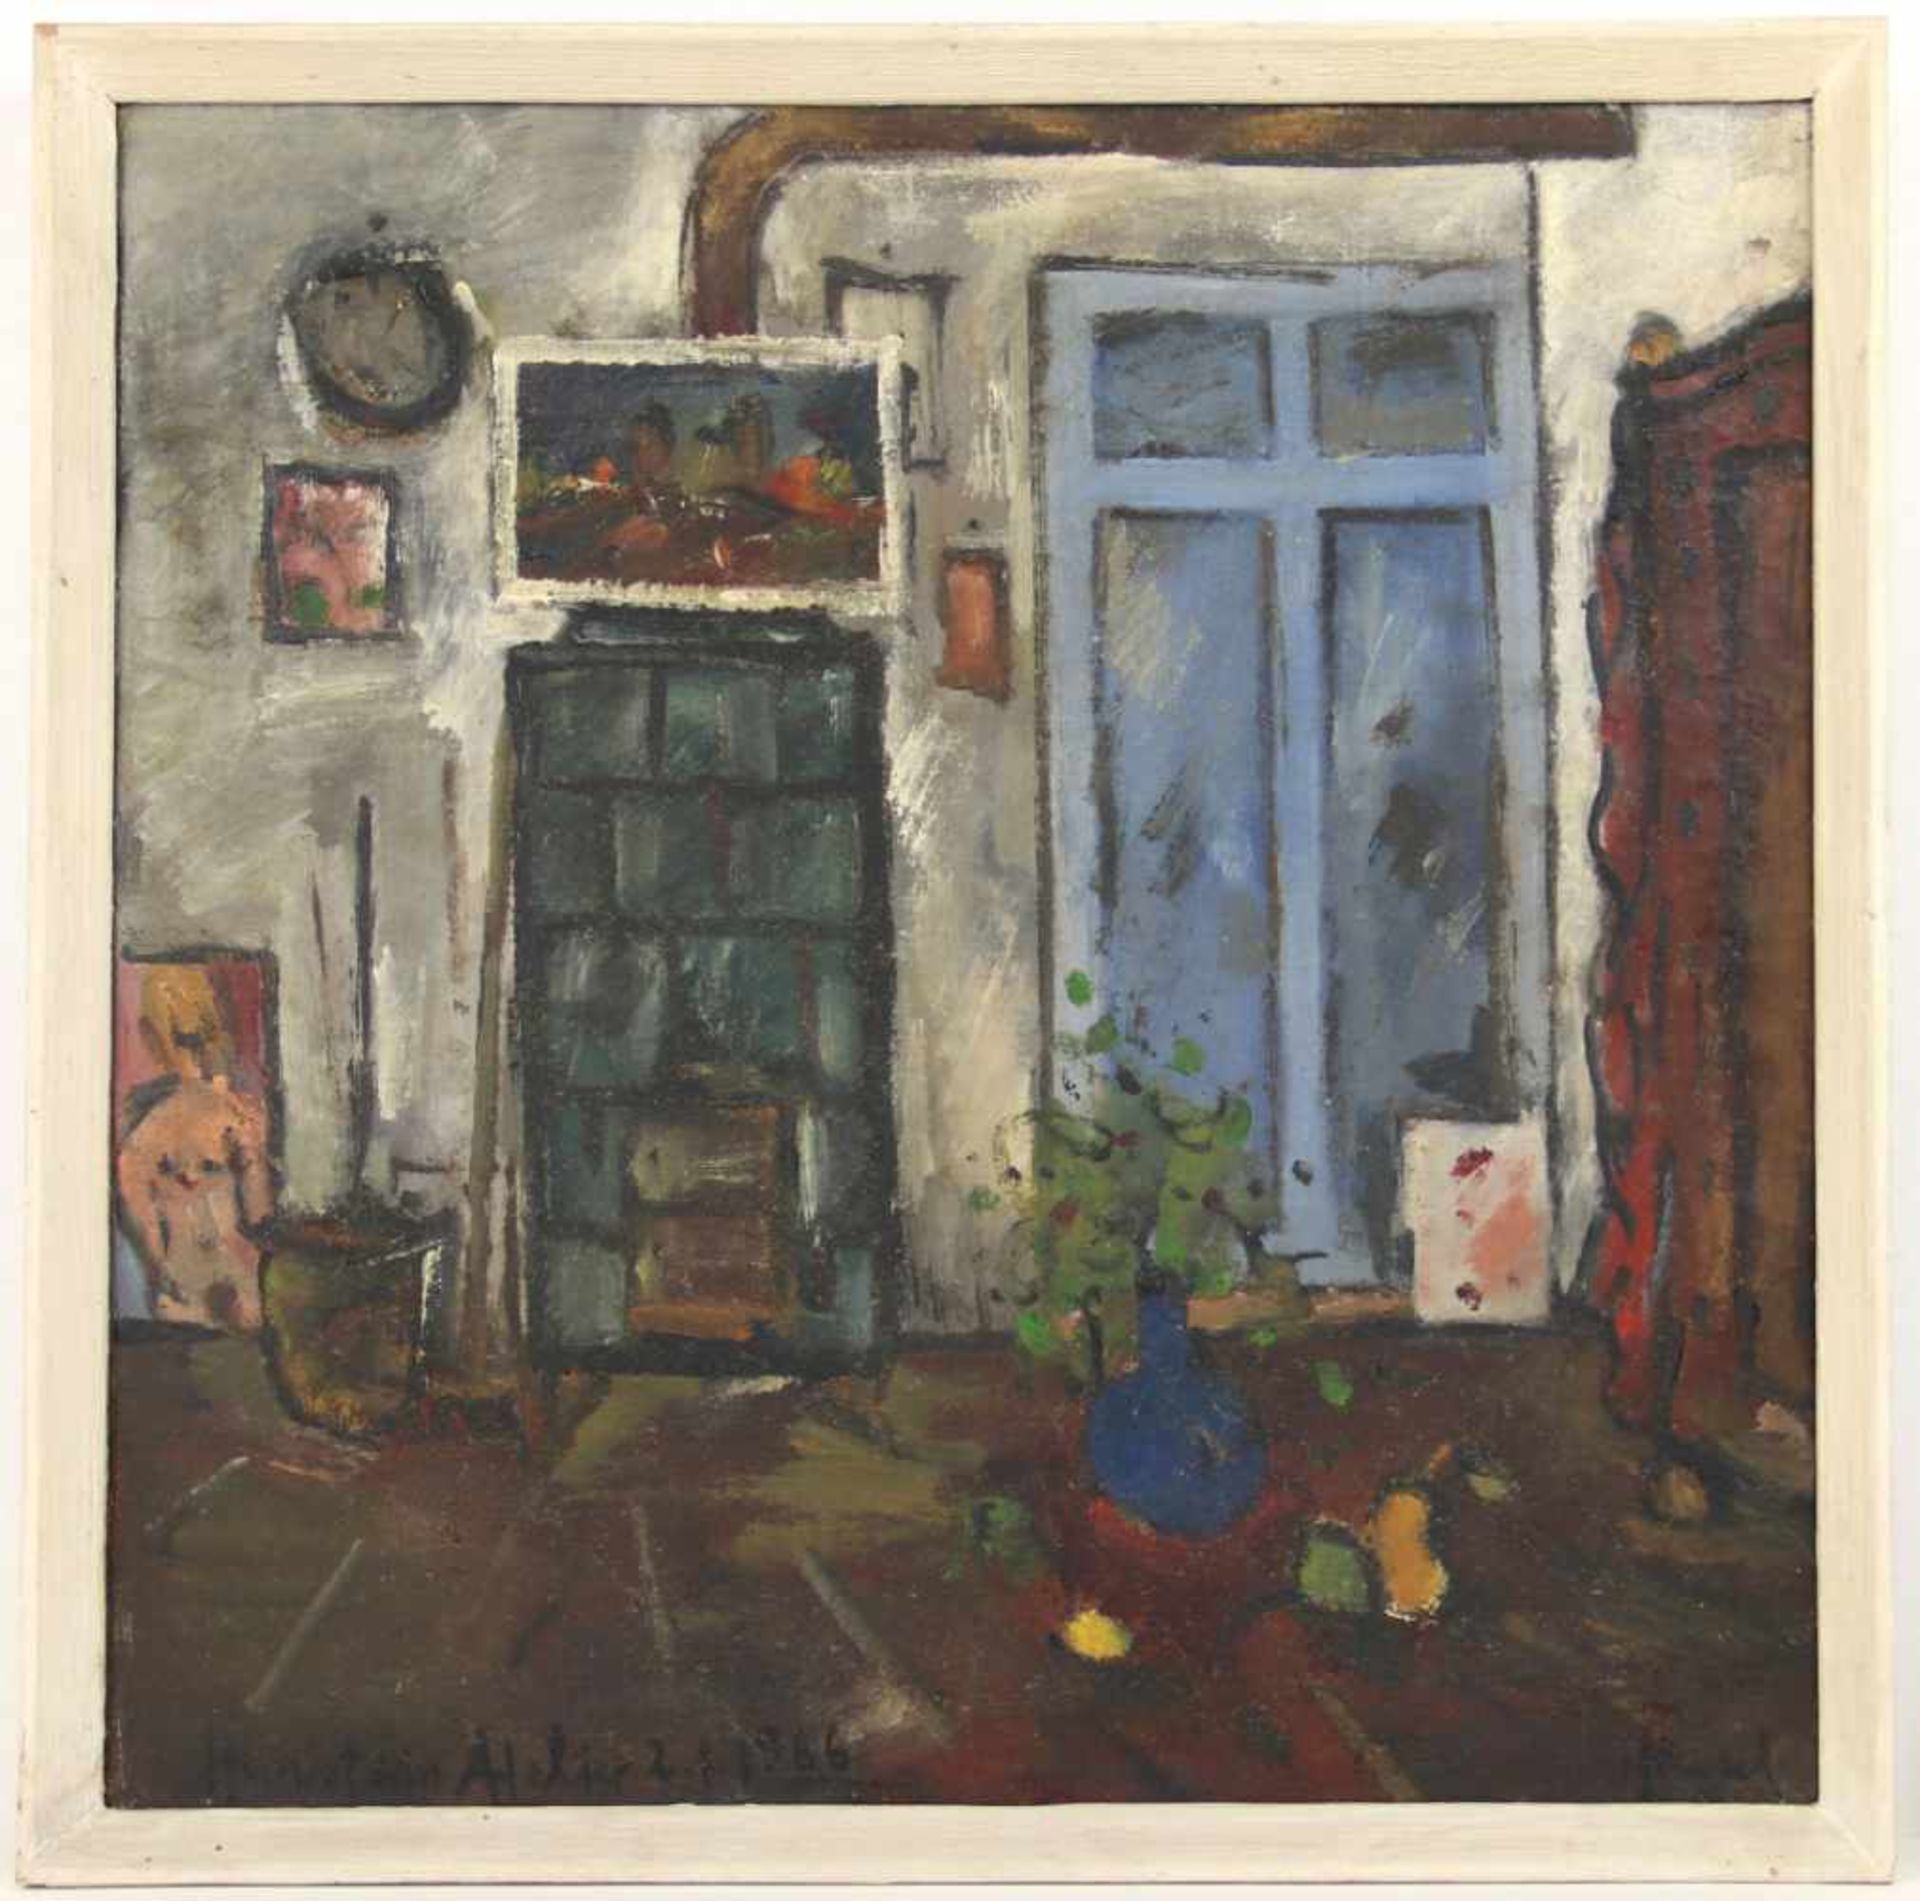 Frenzel, Roland. (1938-2004): Huniat sein Atelier. Szene aus dem Atelier des Leipziger